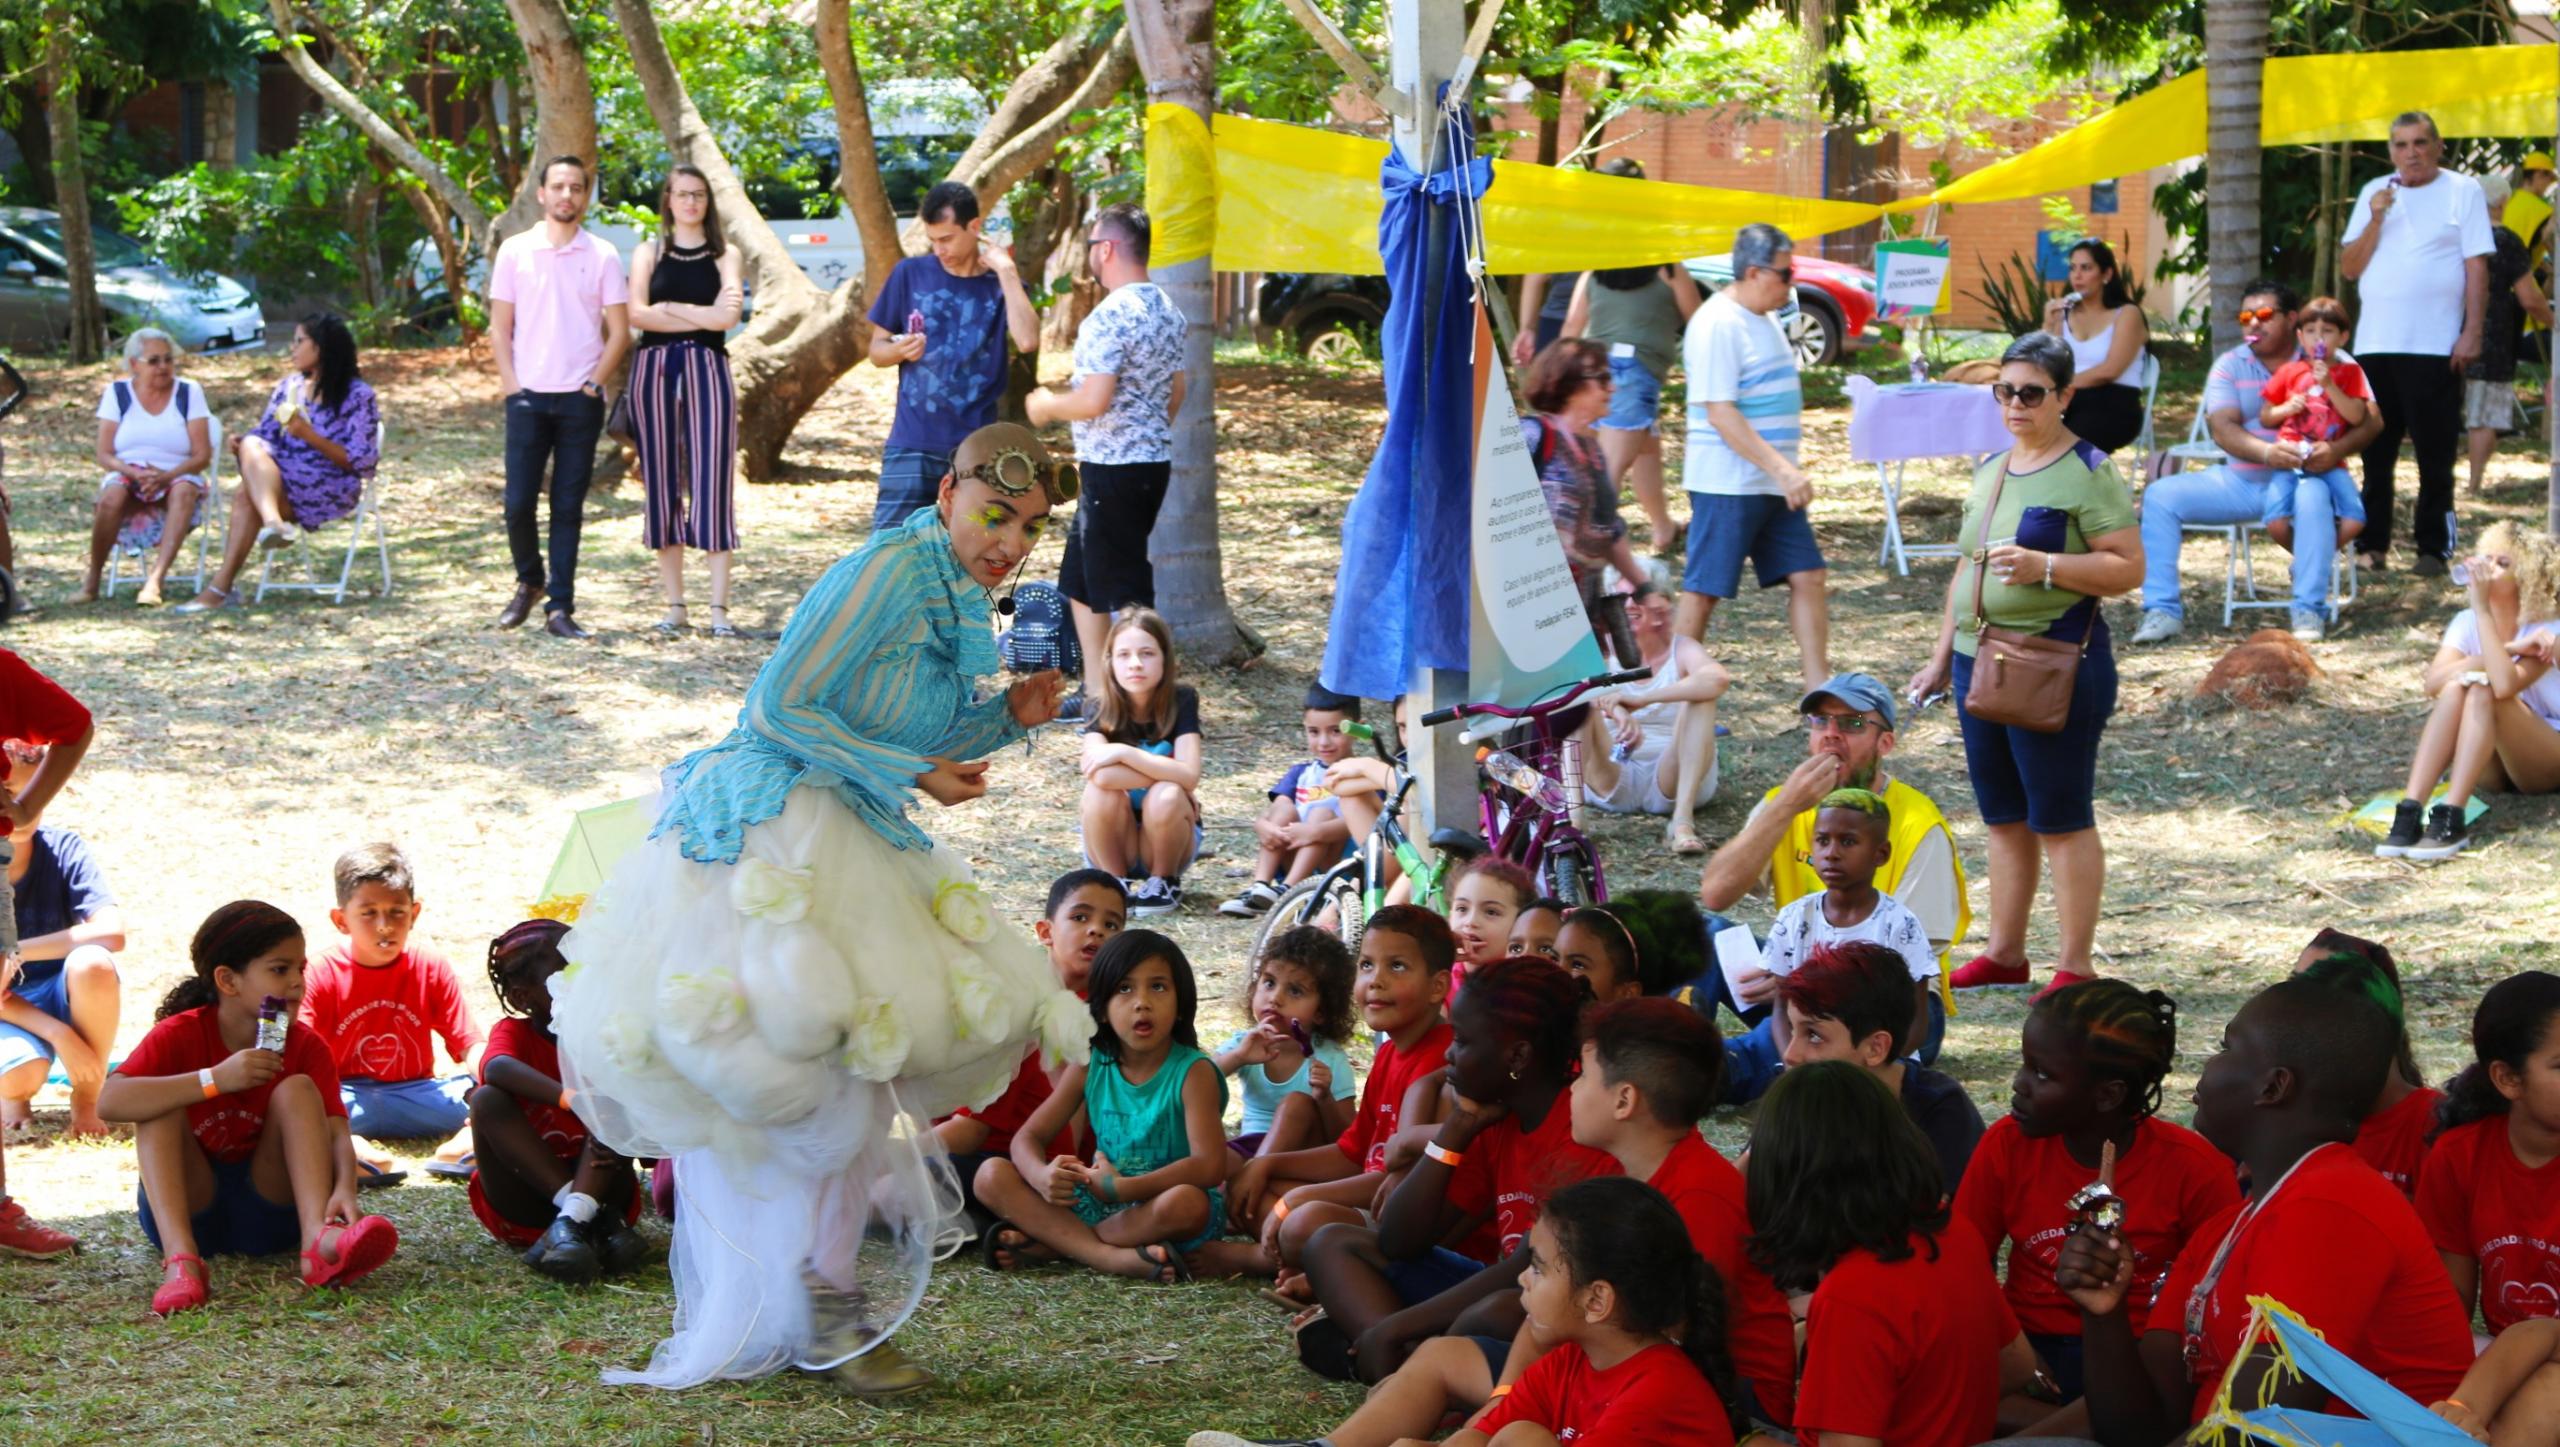 Crianças em roda assistem a uma pessoa fantasiada se apresentar numa praça arborizada, enquanto adultos também observam ao fundo.